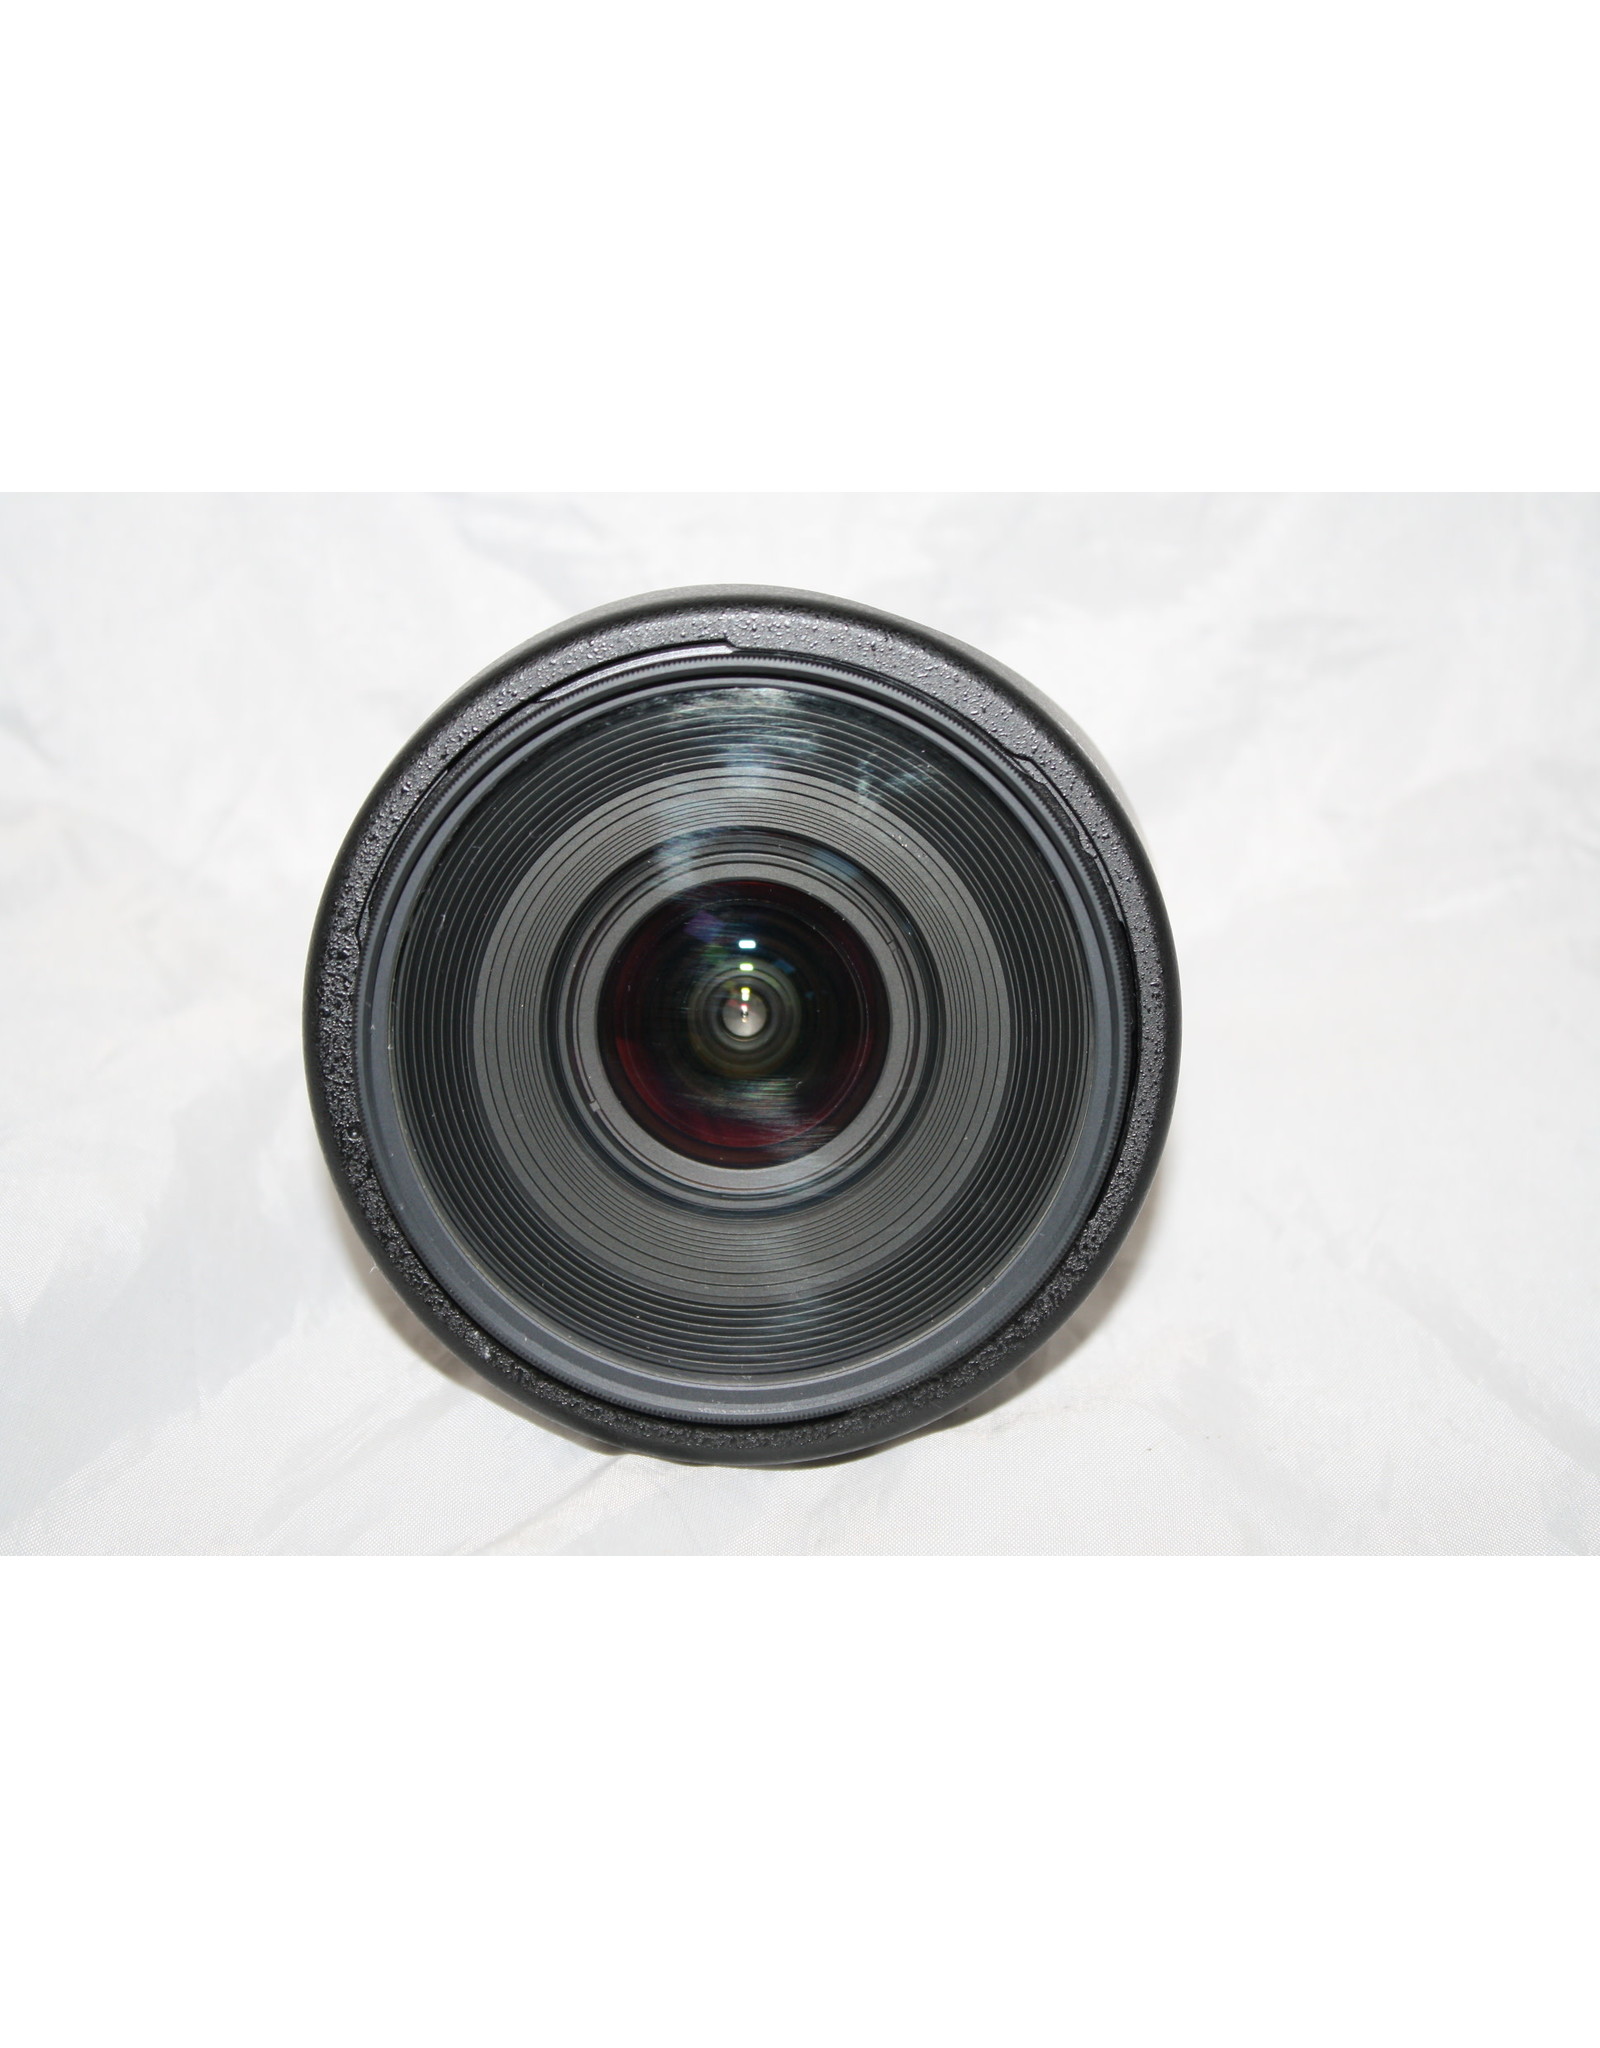 Nikon Tokina AF 17mm F3.5 AT-X 17AF Aspherical AF Lens For Nikon F #190531s (Pre-owned)